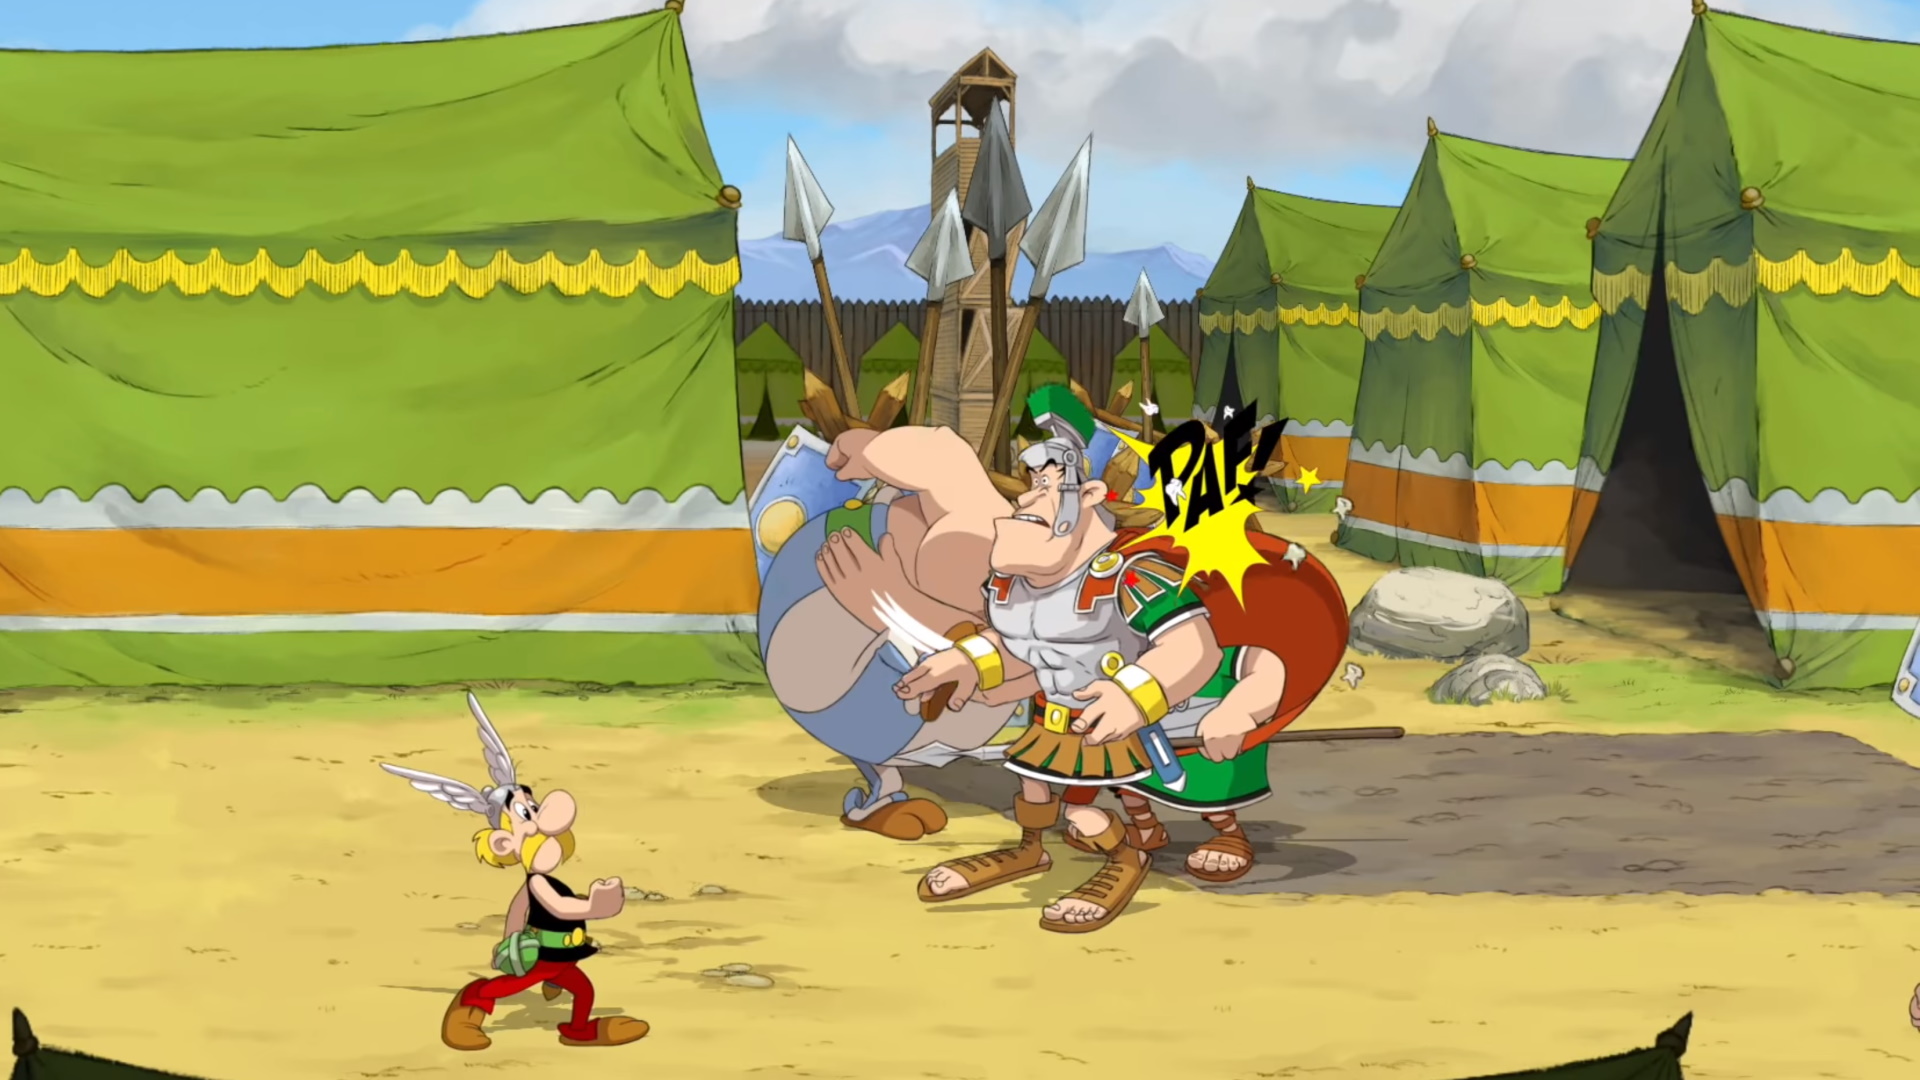  Asterix & Obelix: Slap Them All!